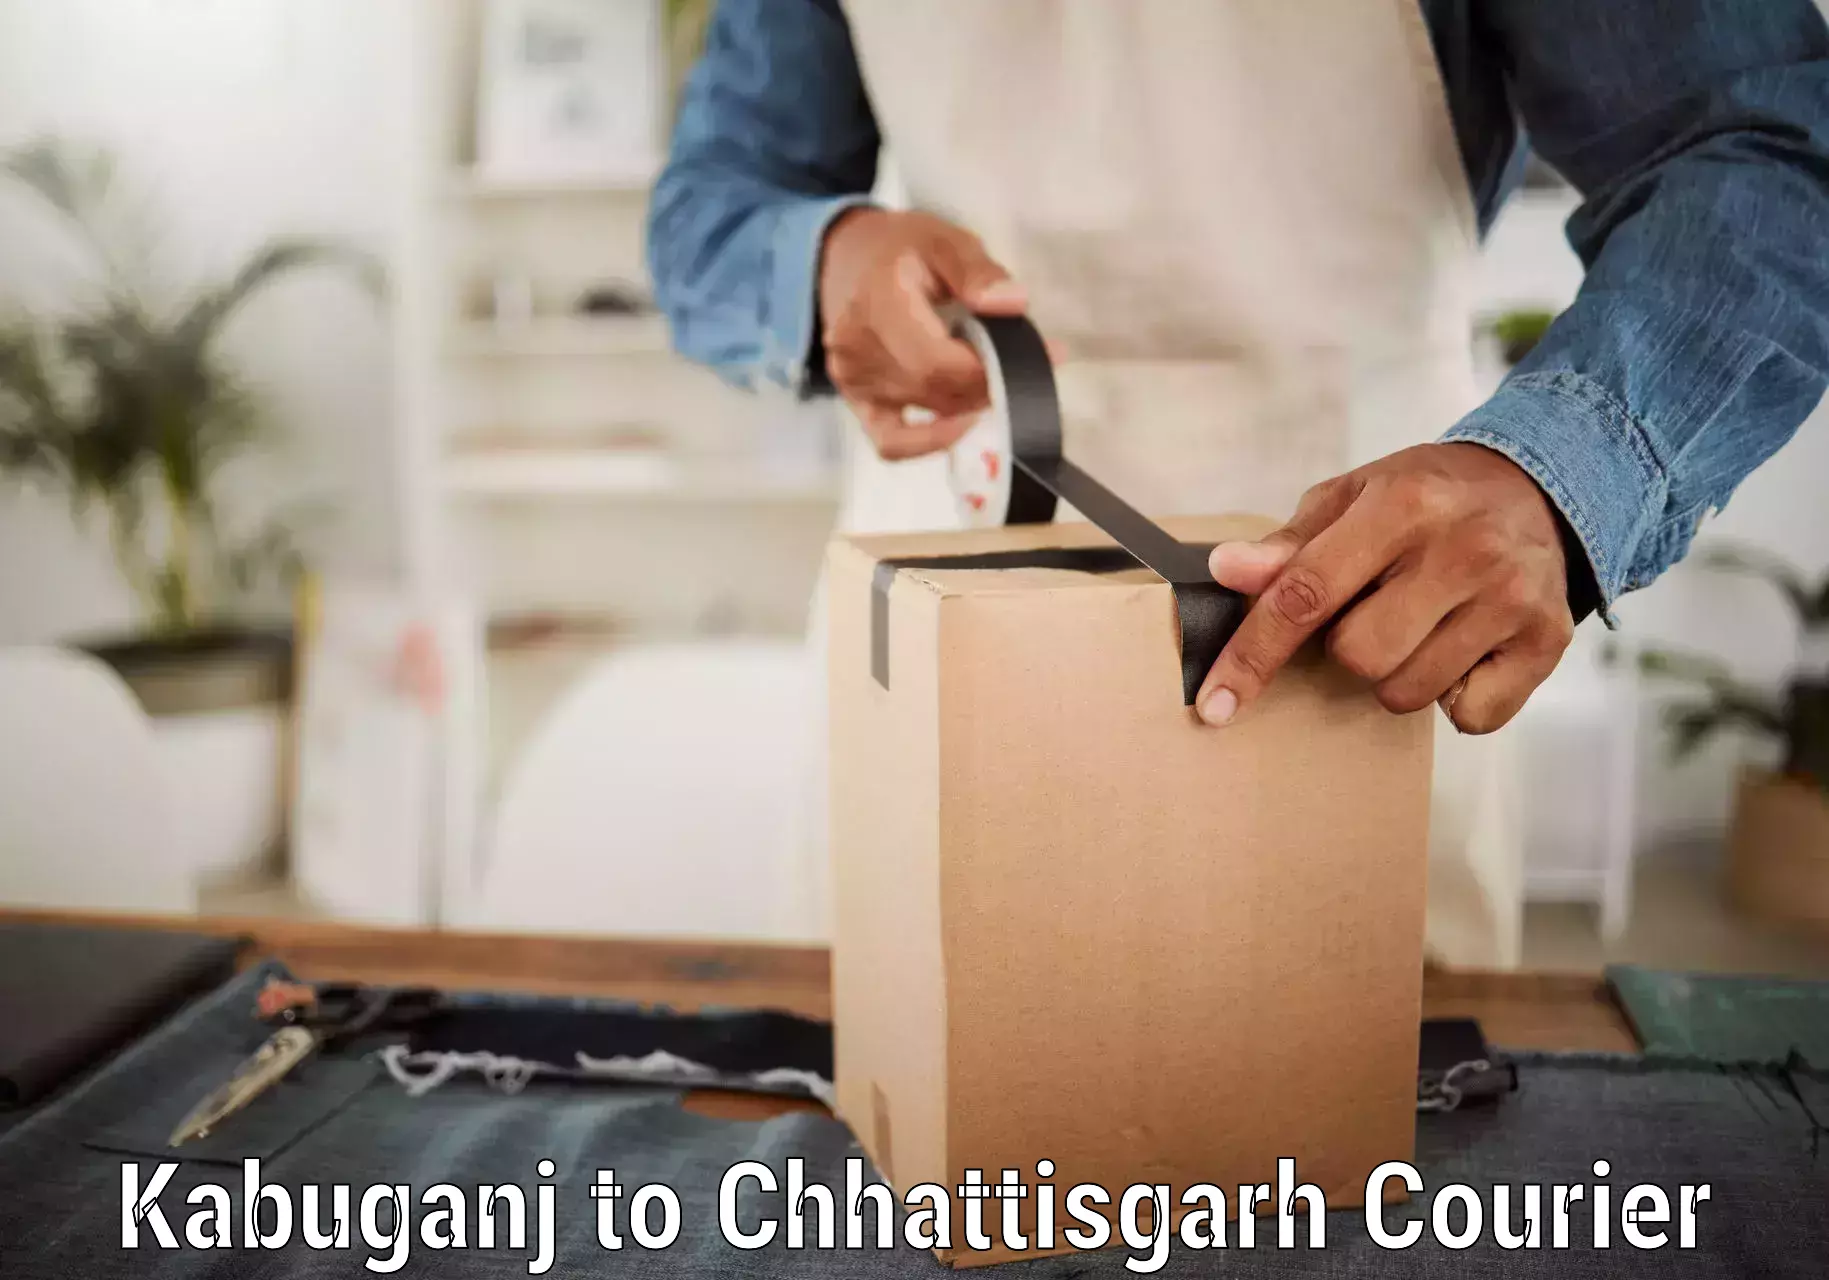 Emergency parcel delivery Kabuganj to Patna Chhattisgarh